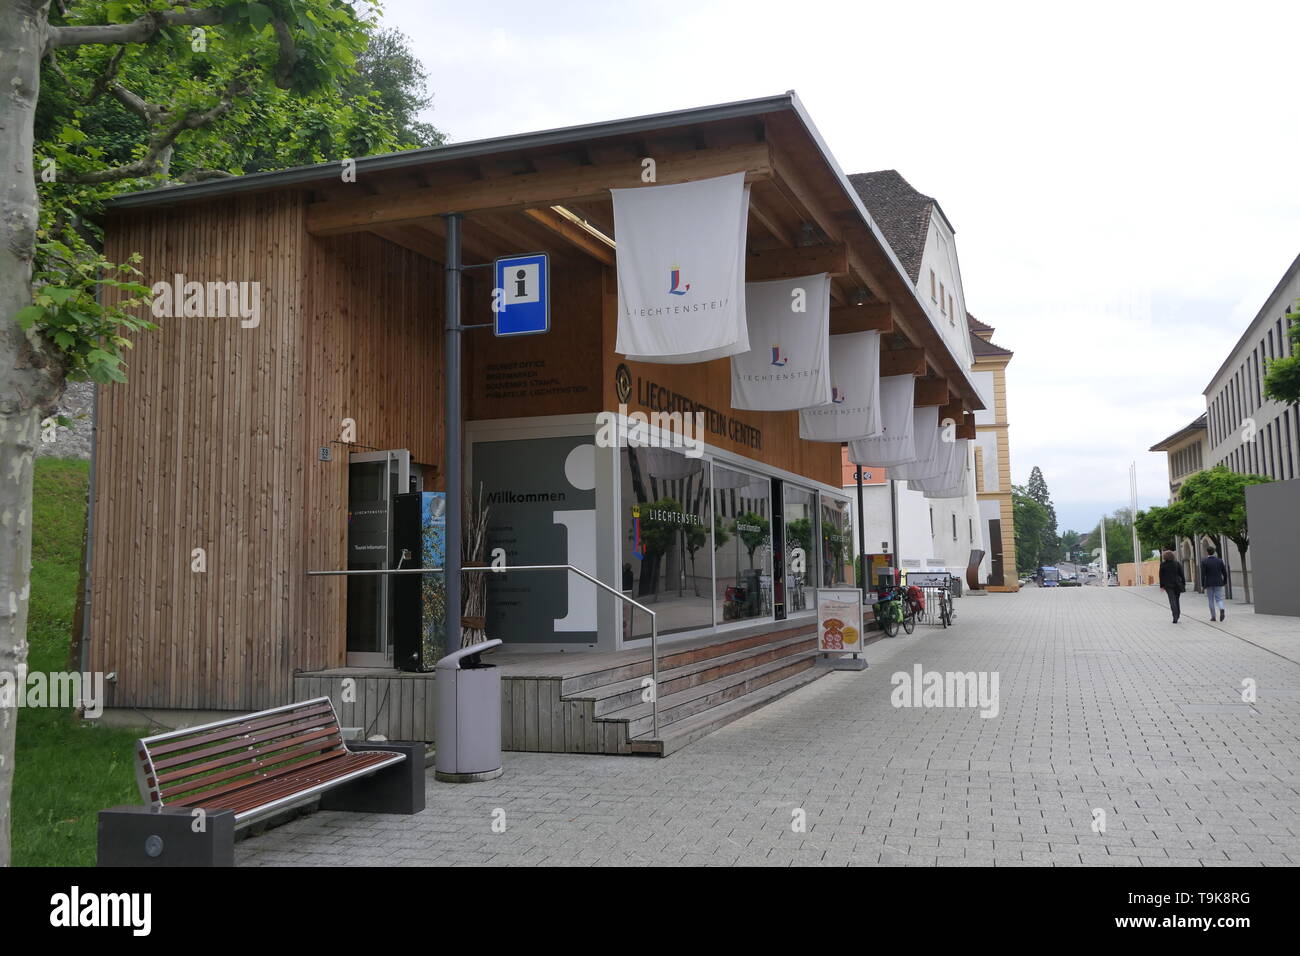 Vaduz Liechtenstein Center, Tourist information center in Liechtenstein Stock Photo